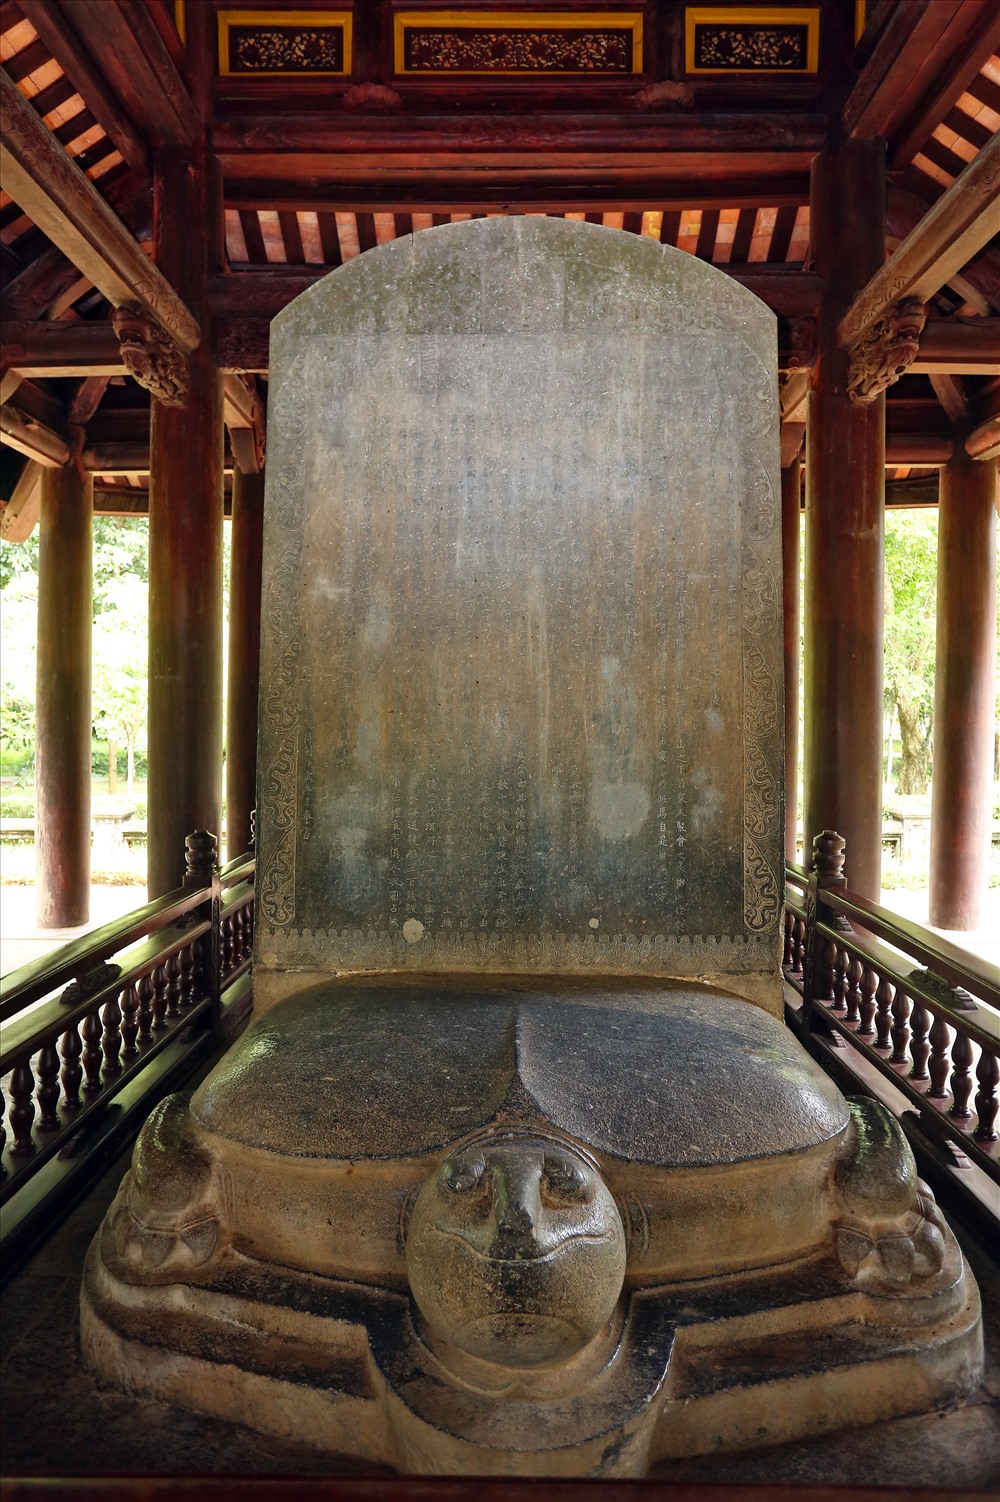 Khu di tích Lam Kinh còn lưu giữ khá nhiều bia cổ, nổi bật nhất là bia Vĩnh Lăng.